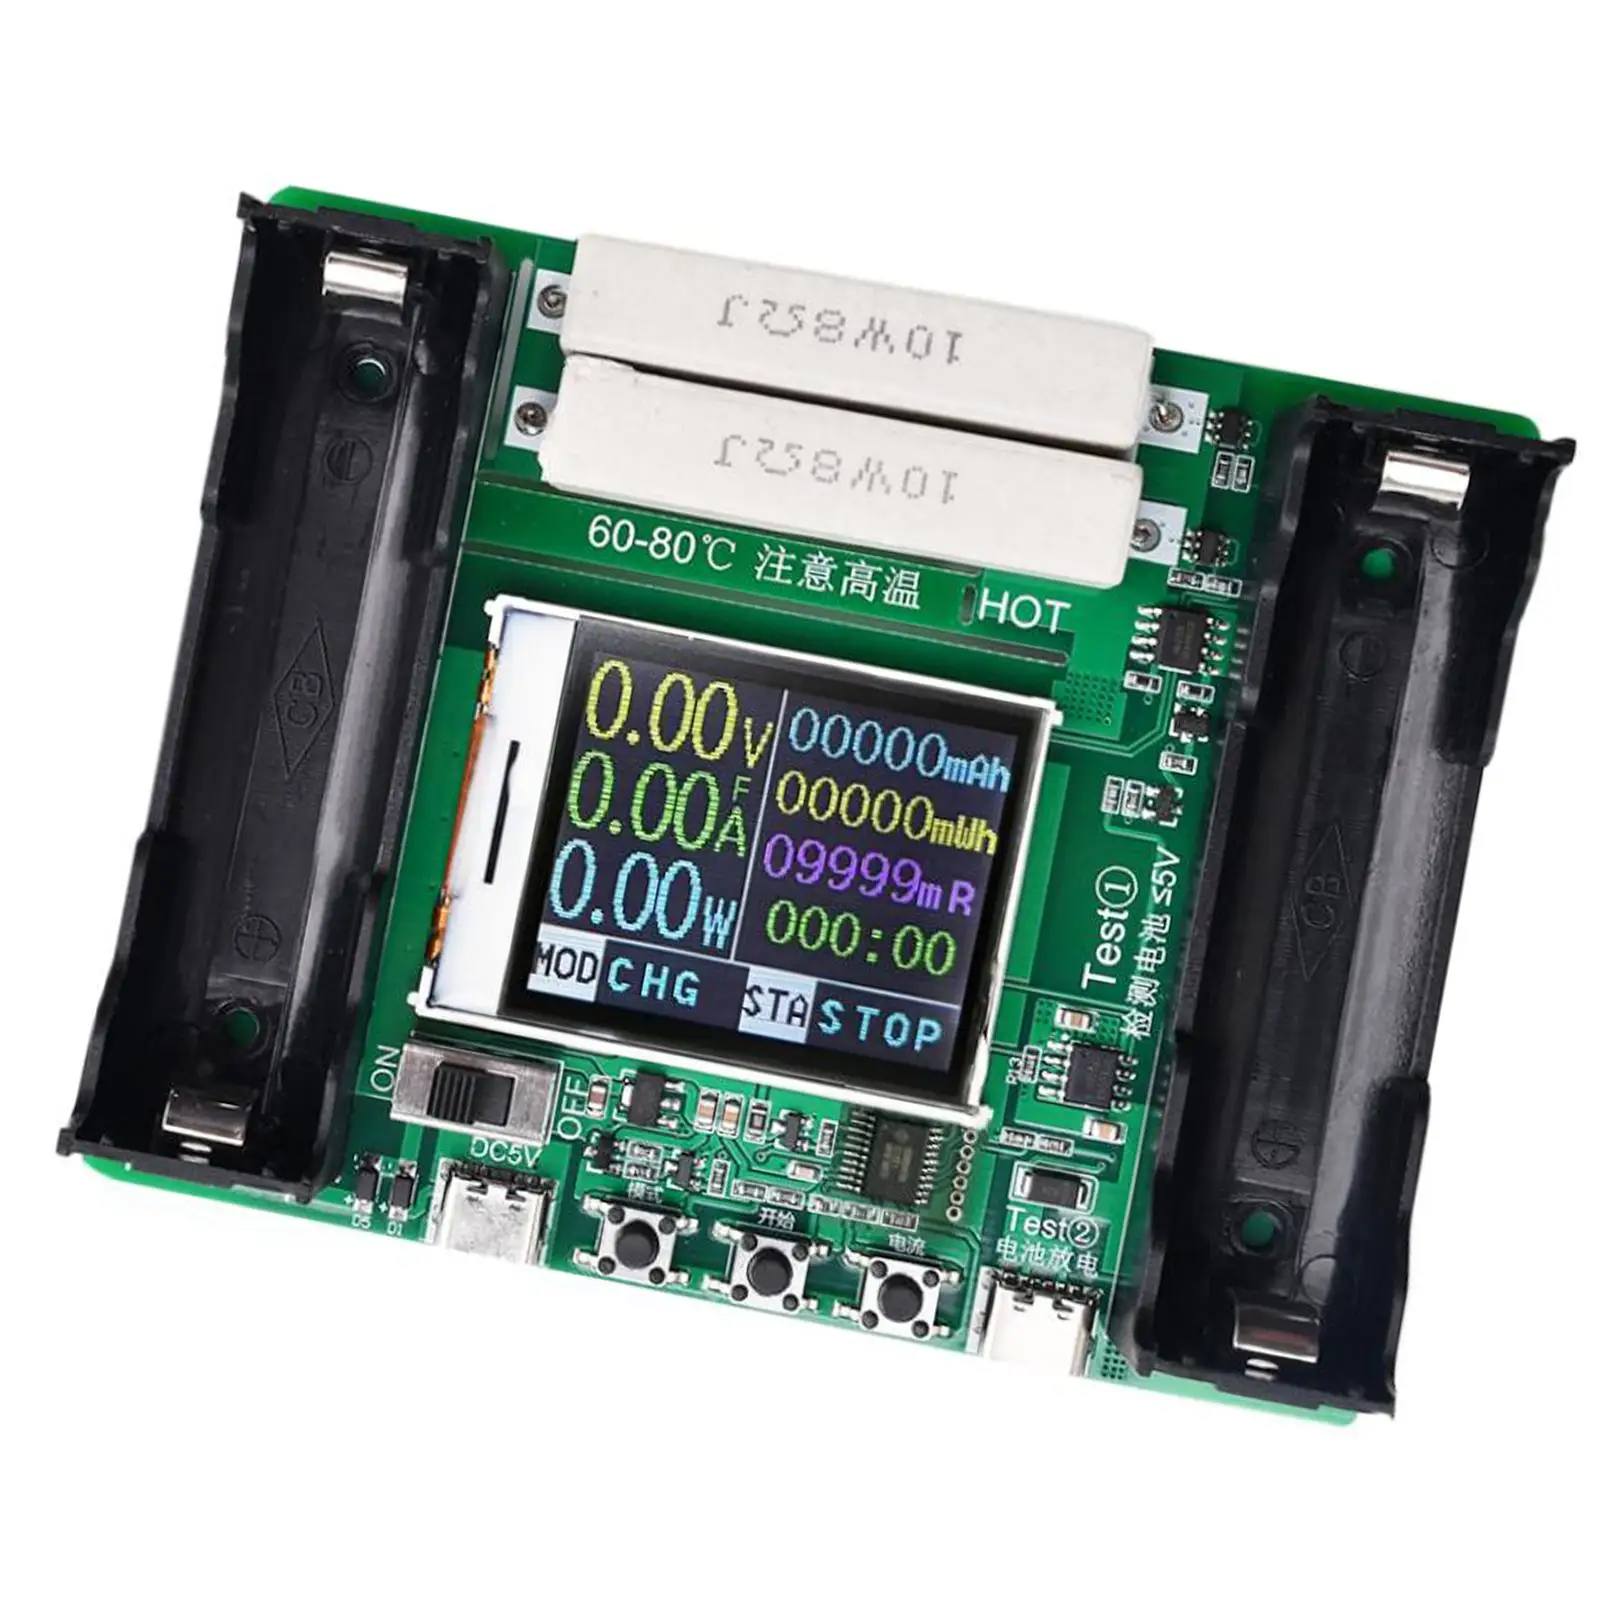 Capacitate baterie Tester Digital de Măsurare de Descărcare a Bateriei de Capacitate Tester Digital Baterie Tester de Module pentru uz Casnic